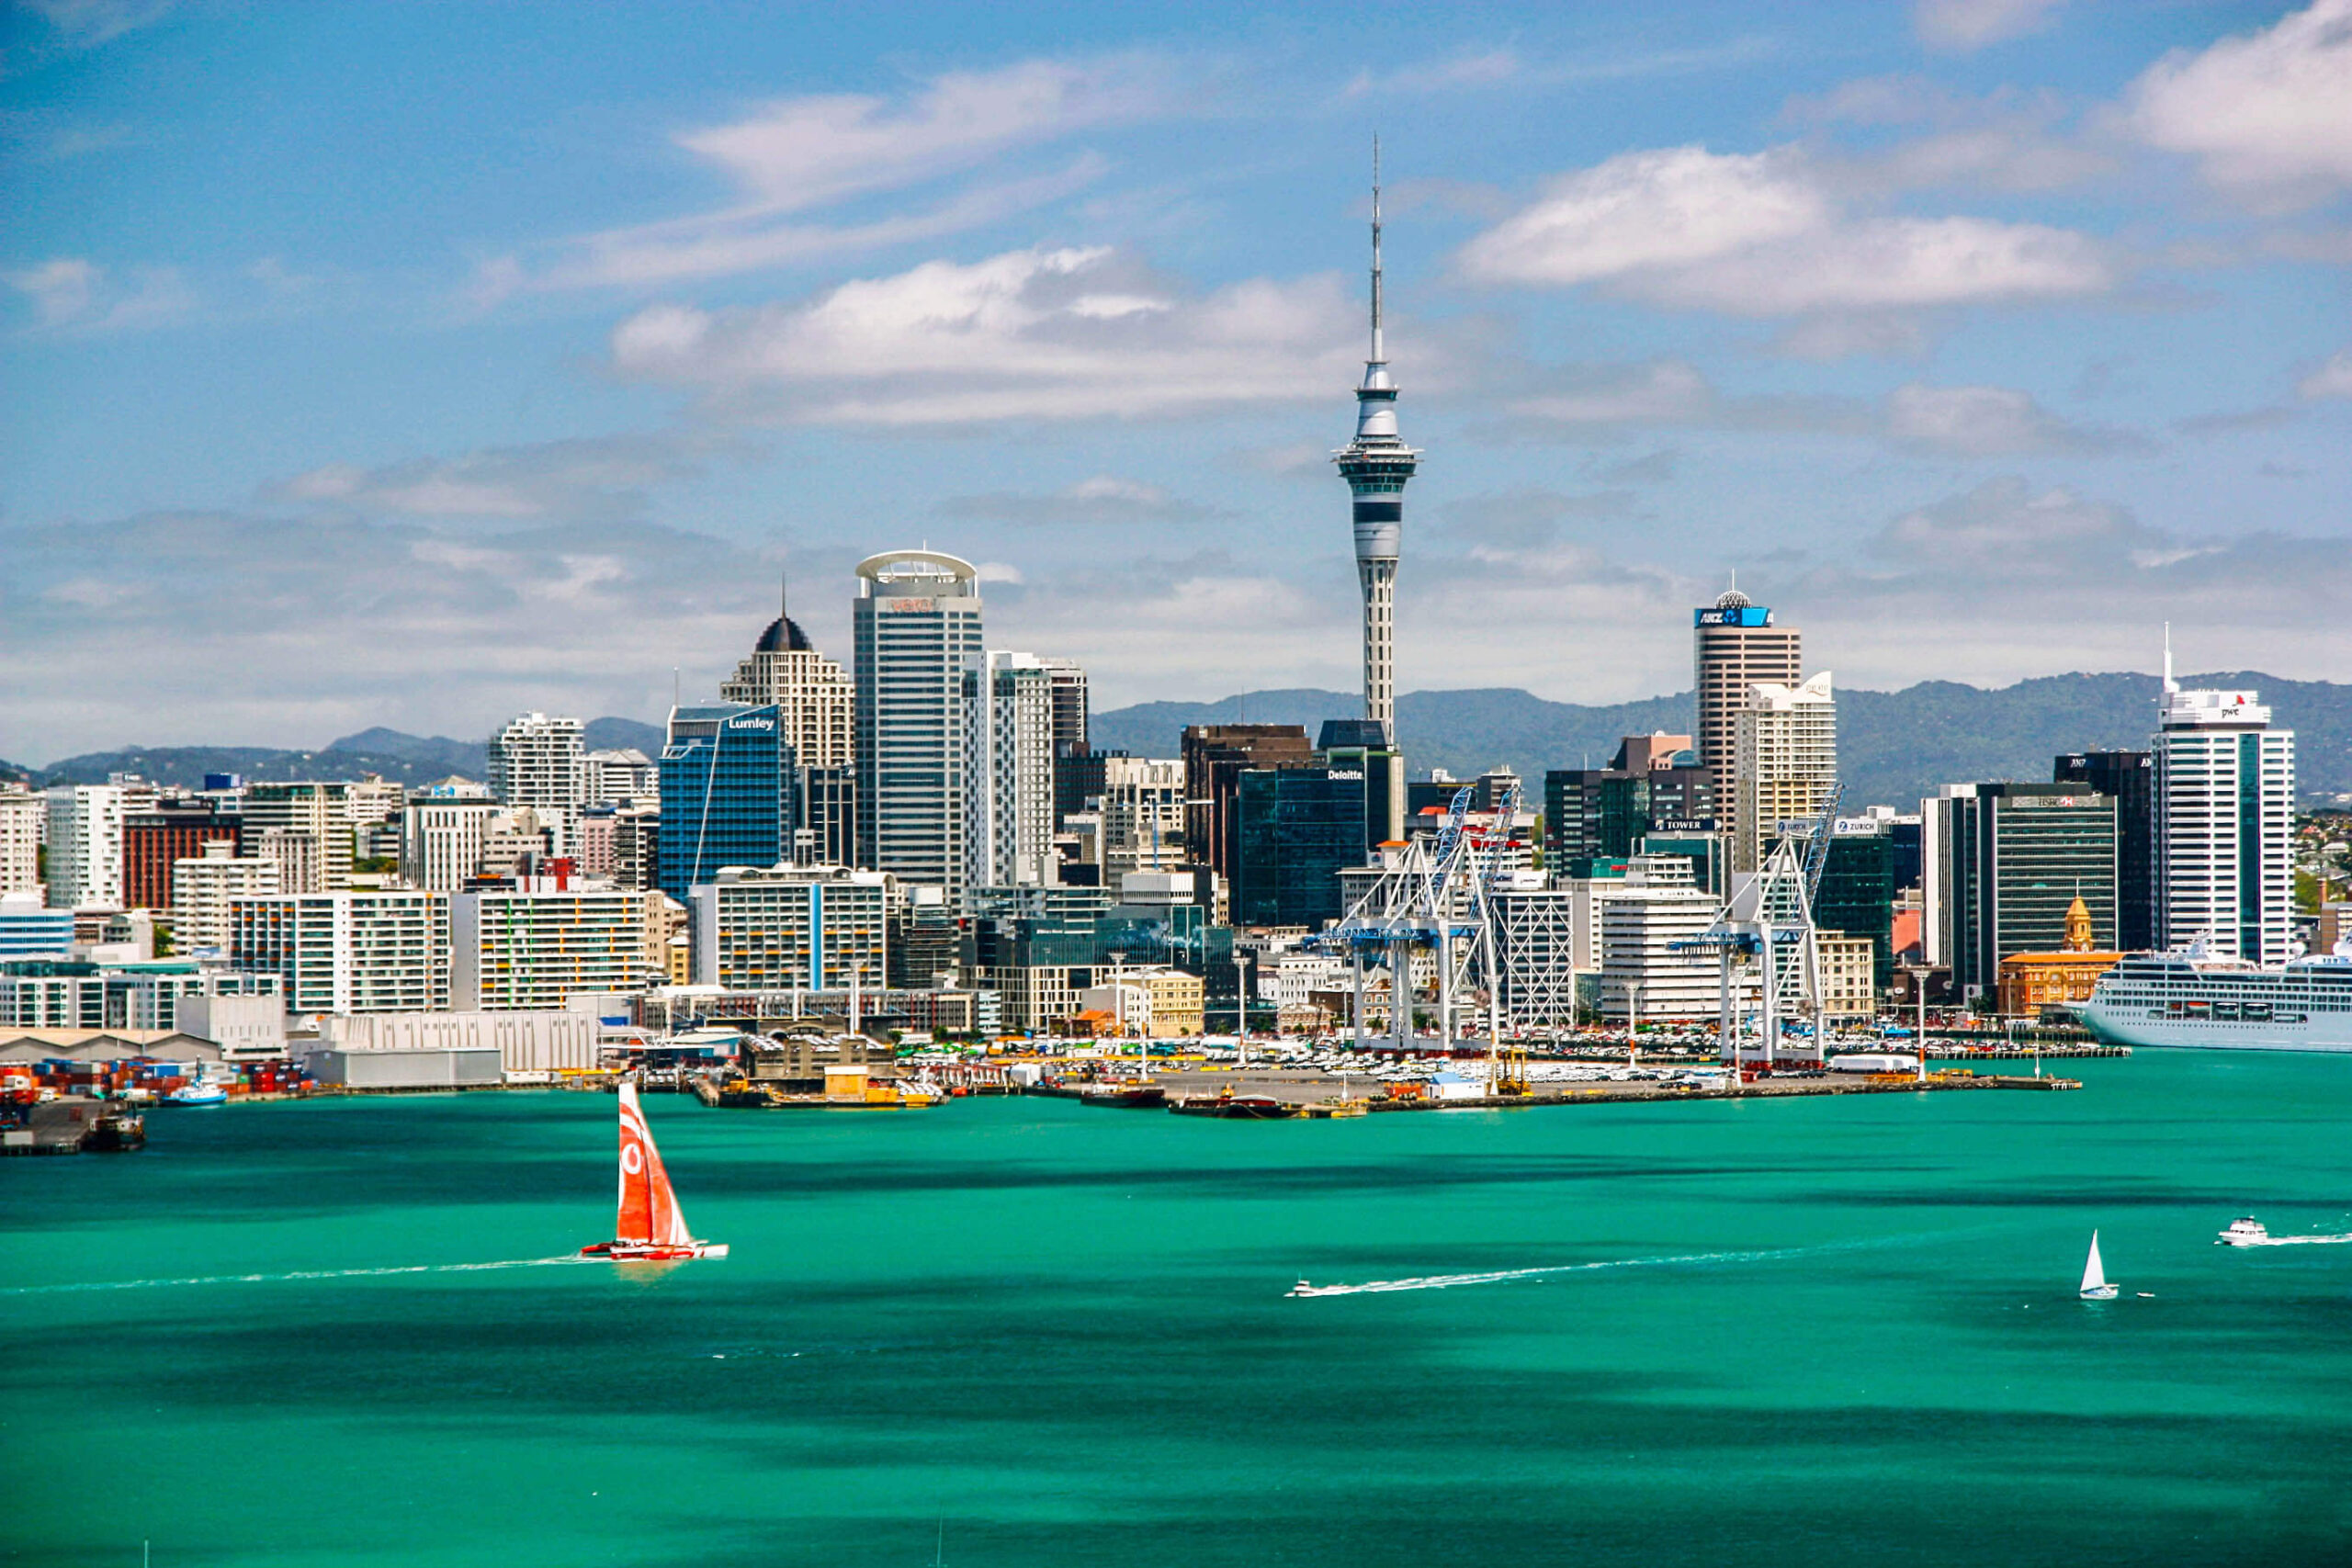 New Zealand vươn lên trở thành quốc gia có hộ chiếu quyền lực nhất